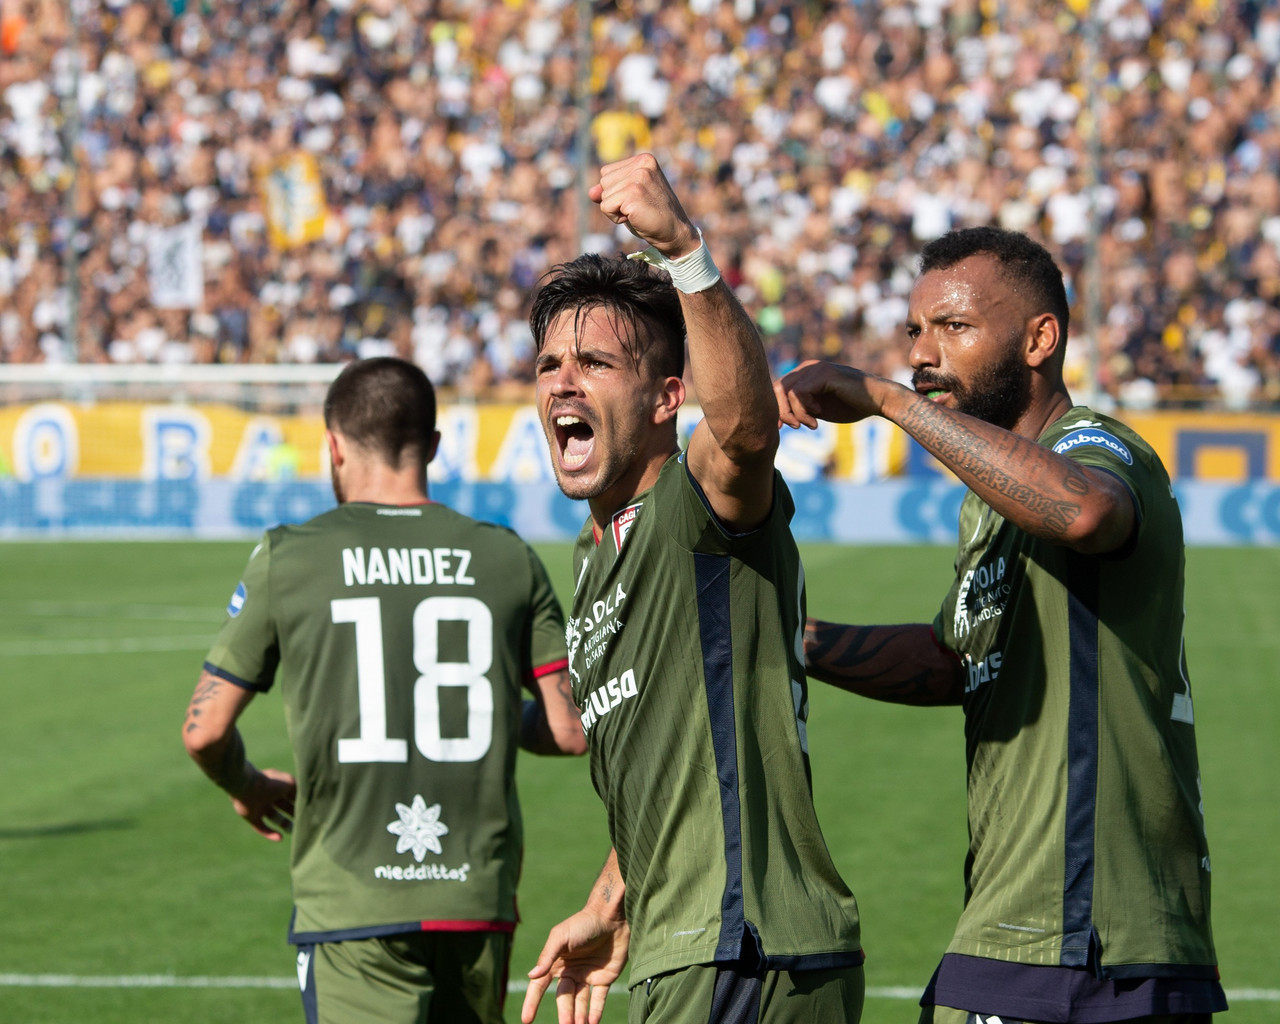 Il Cagliari fa il colpaccio: battuto 1-3 uno sfortunato Parma